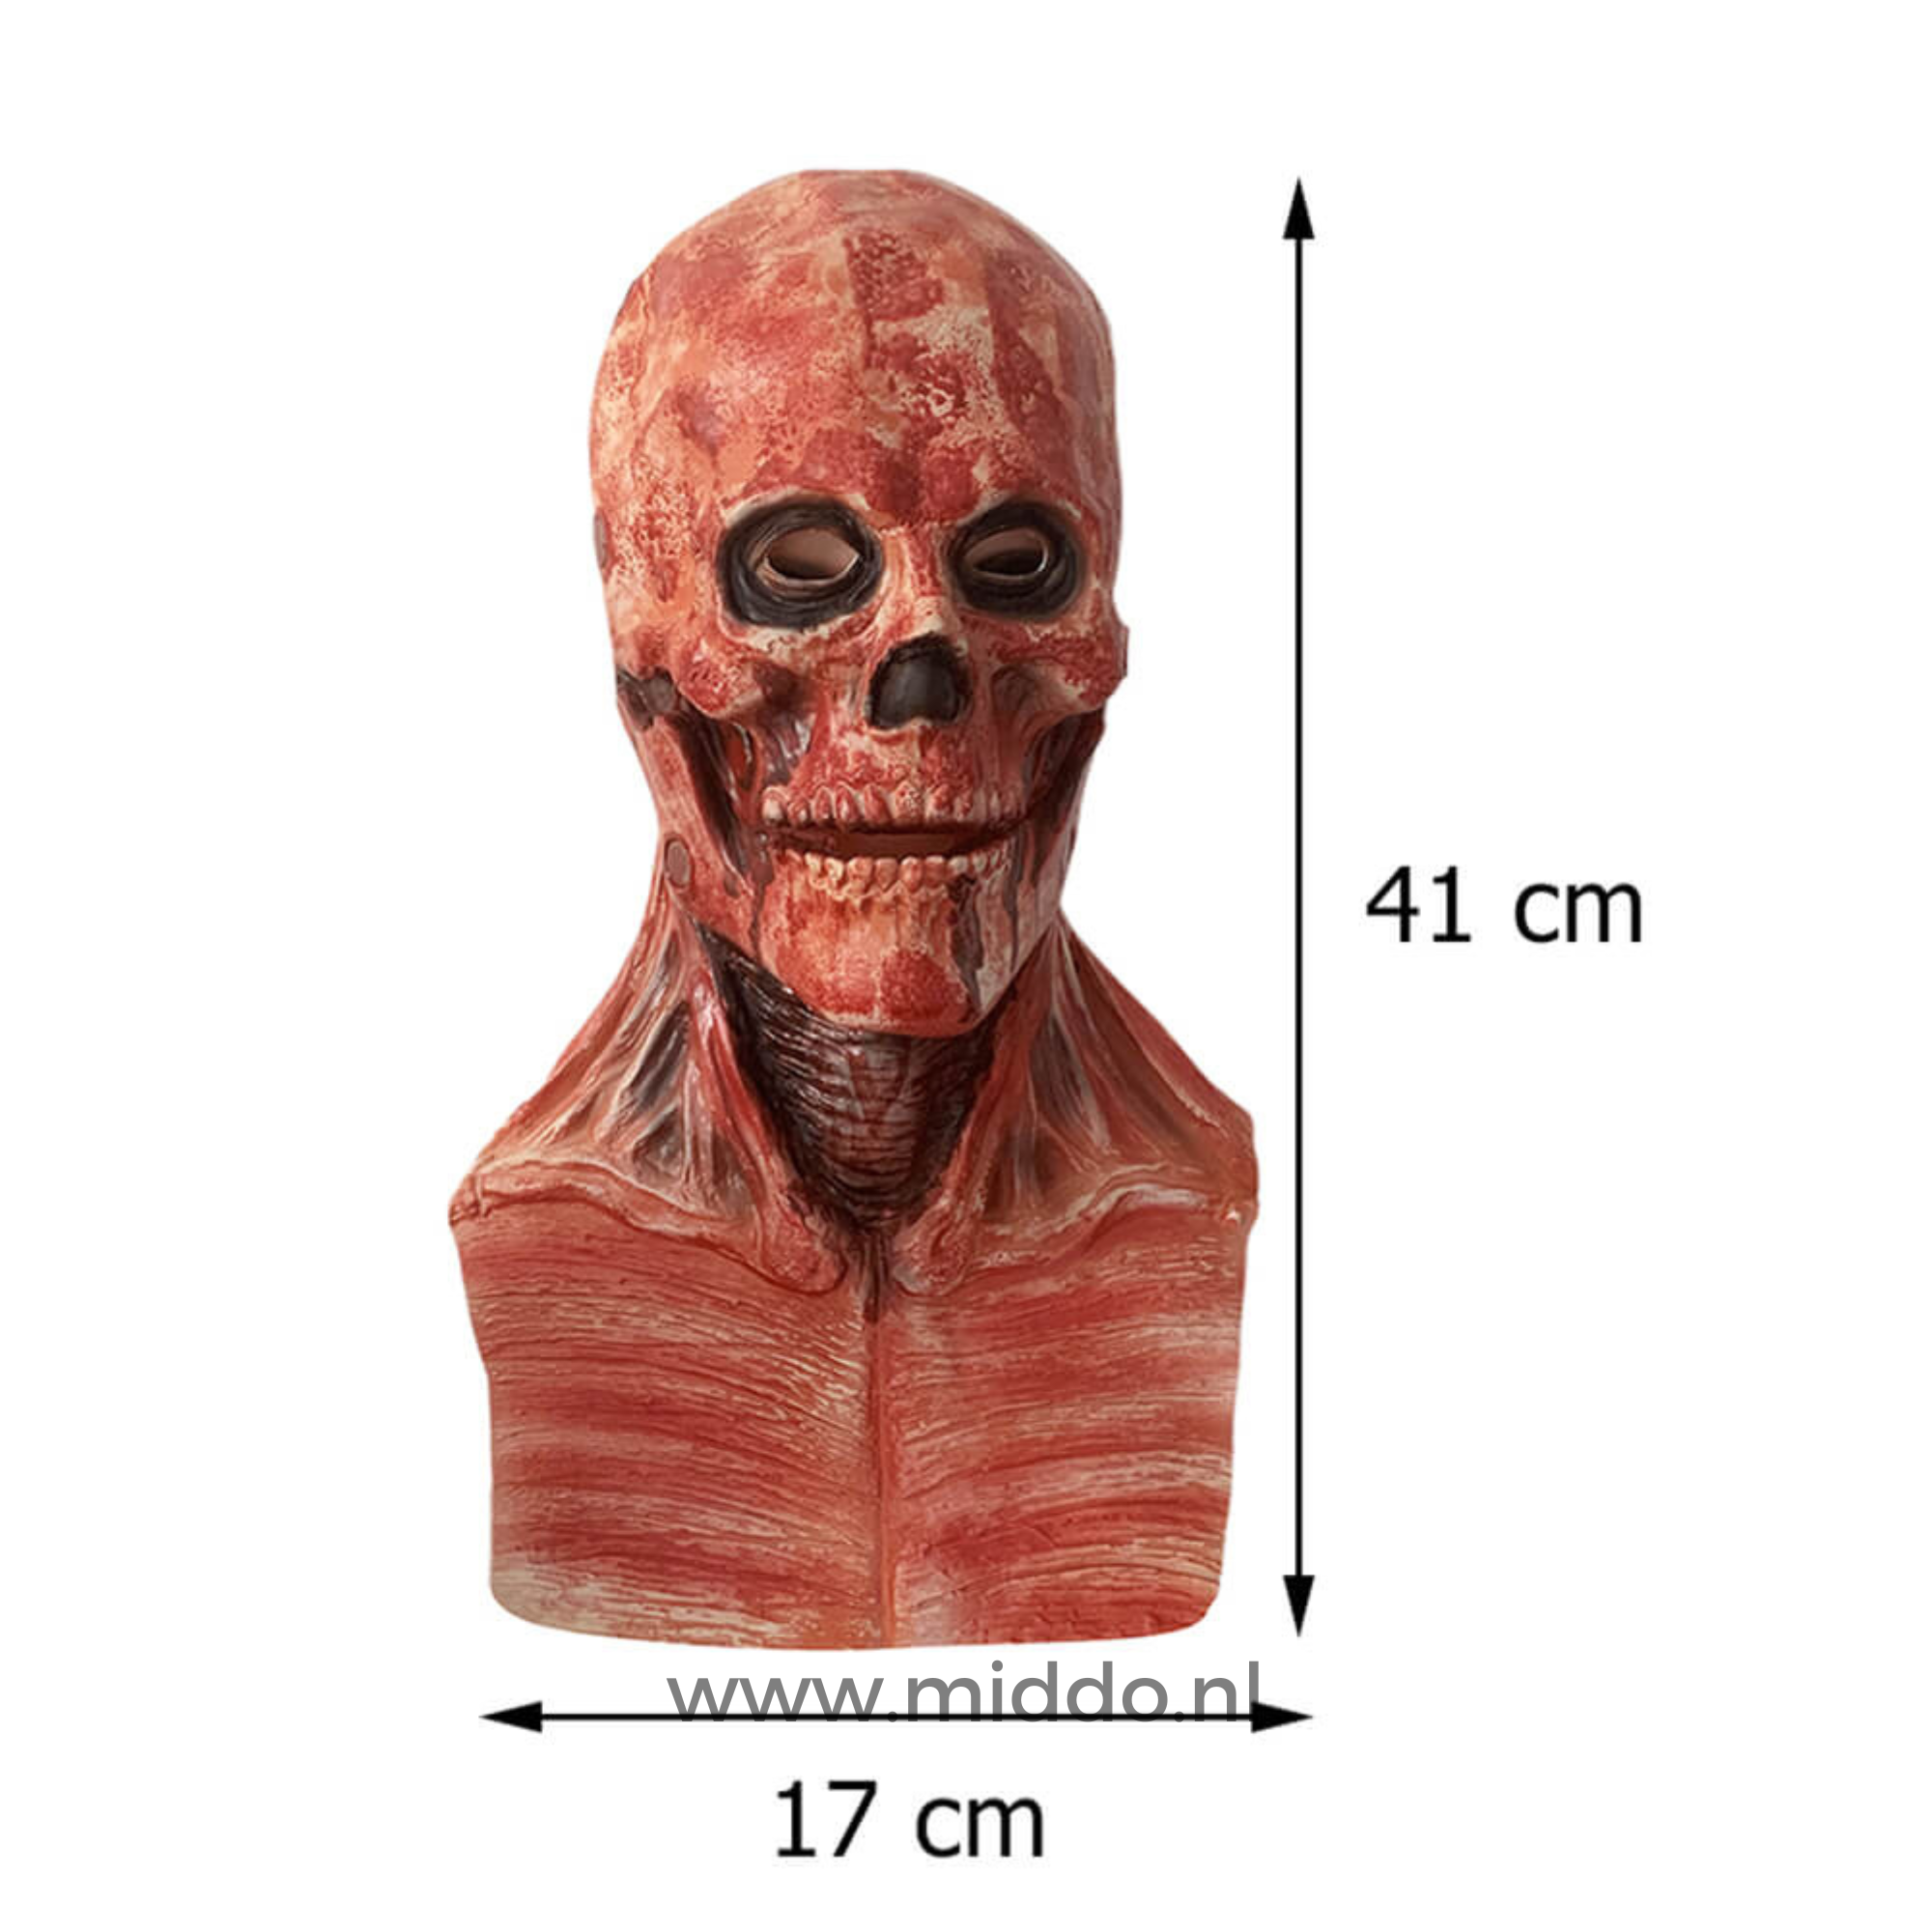 Ultra realistisch peel off Halloween masker met afmetingen van 41 cm hoog en 17 cm breed.